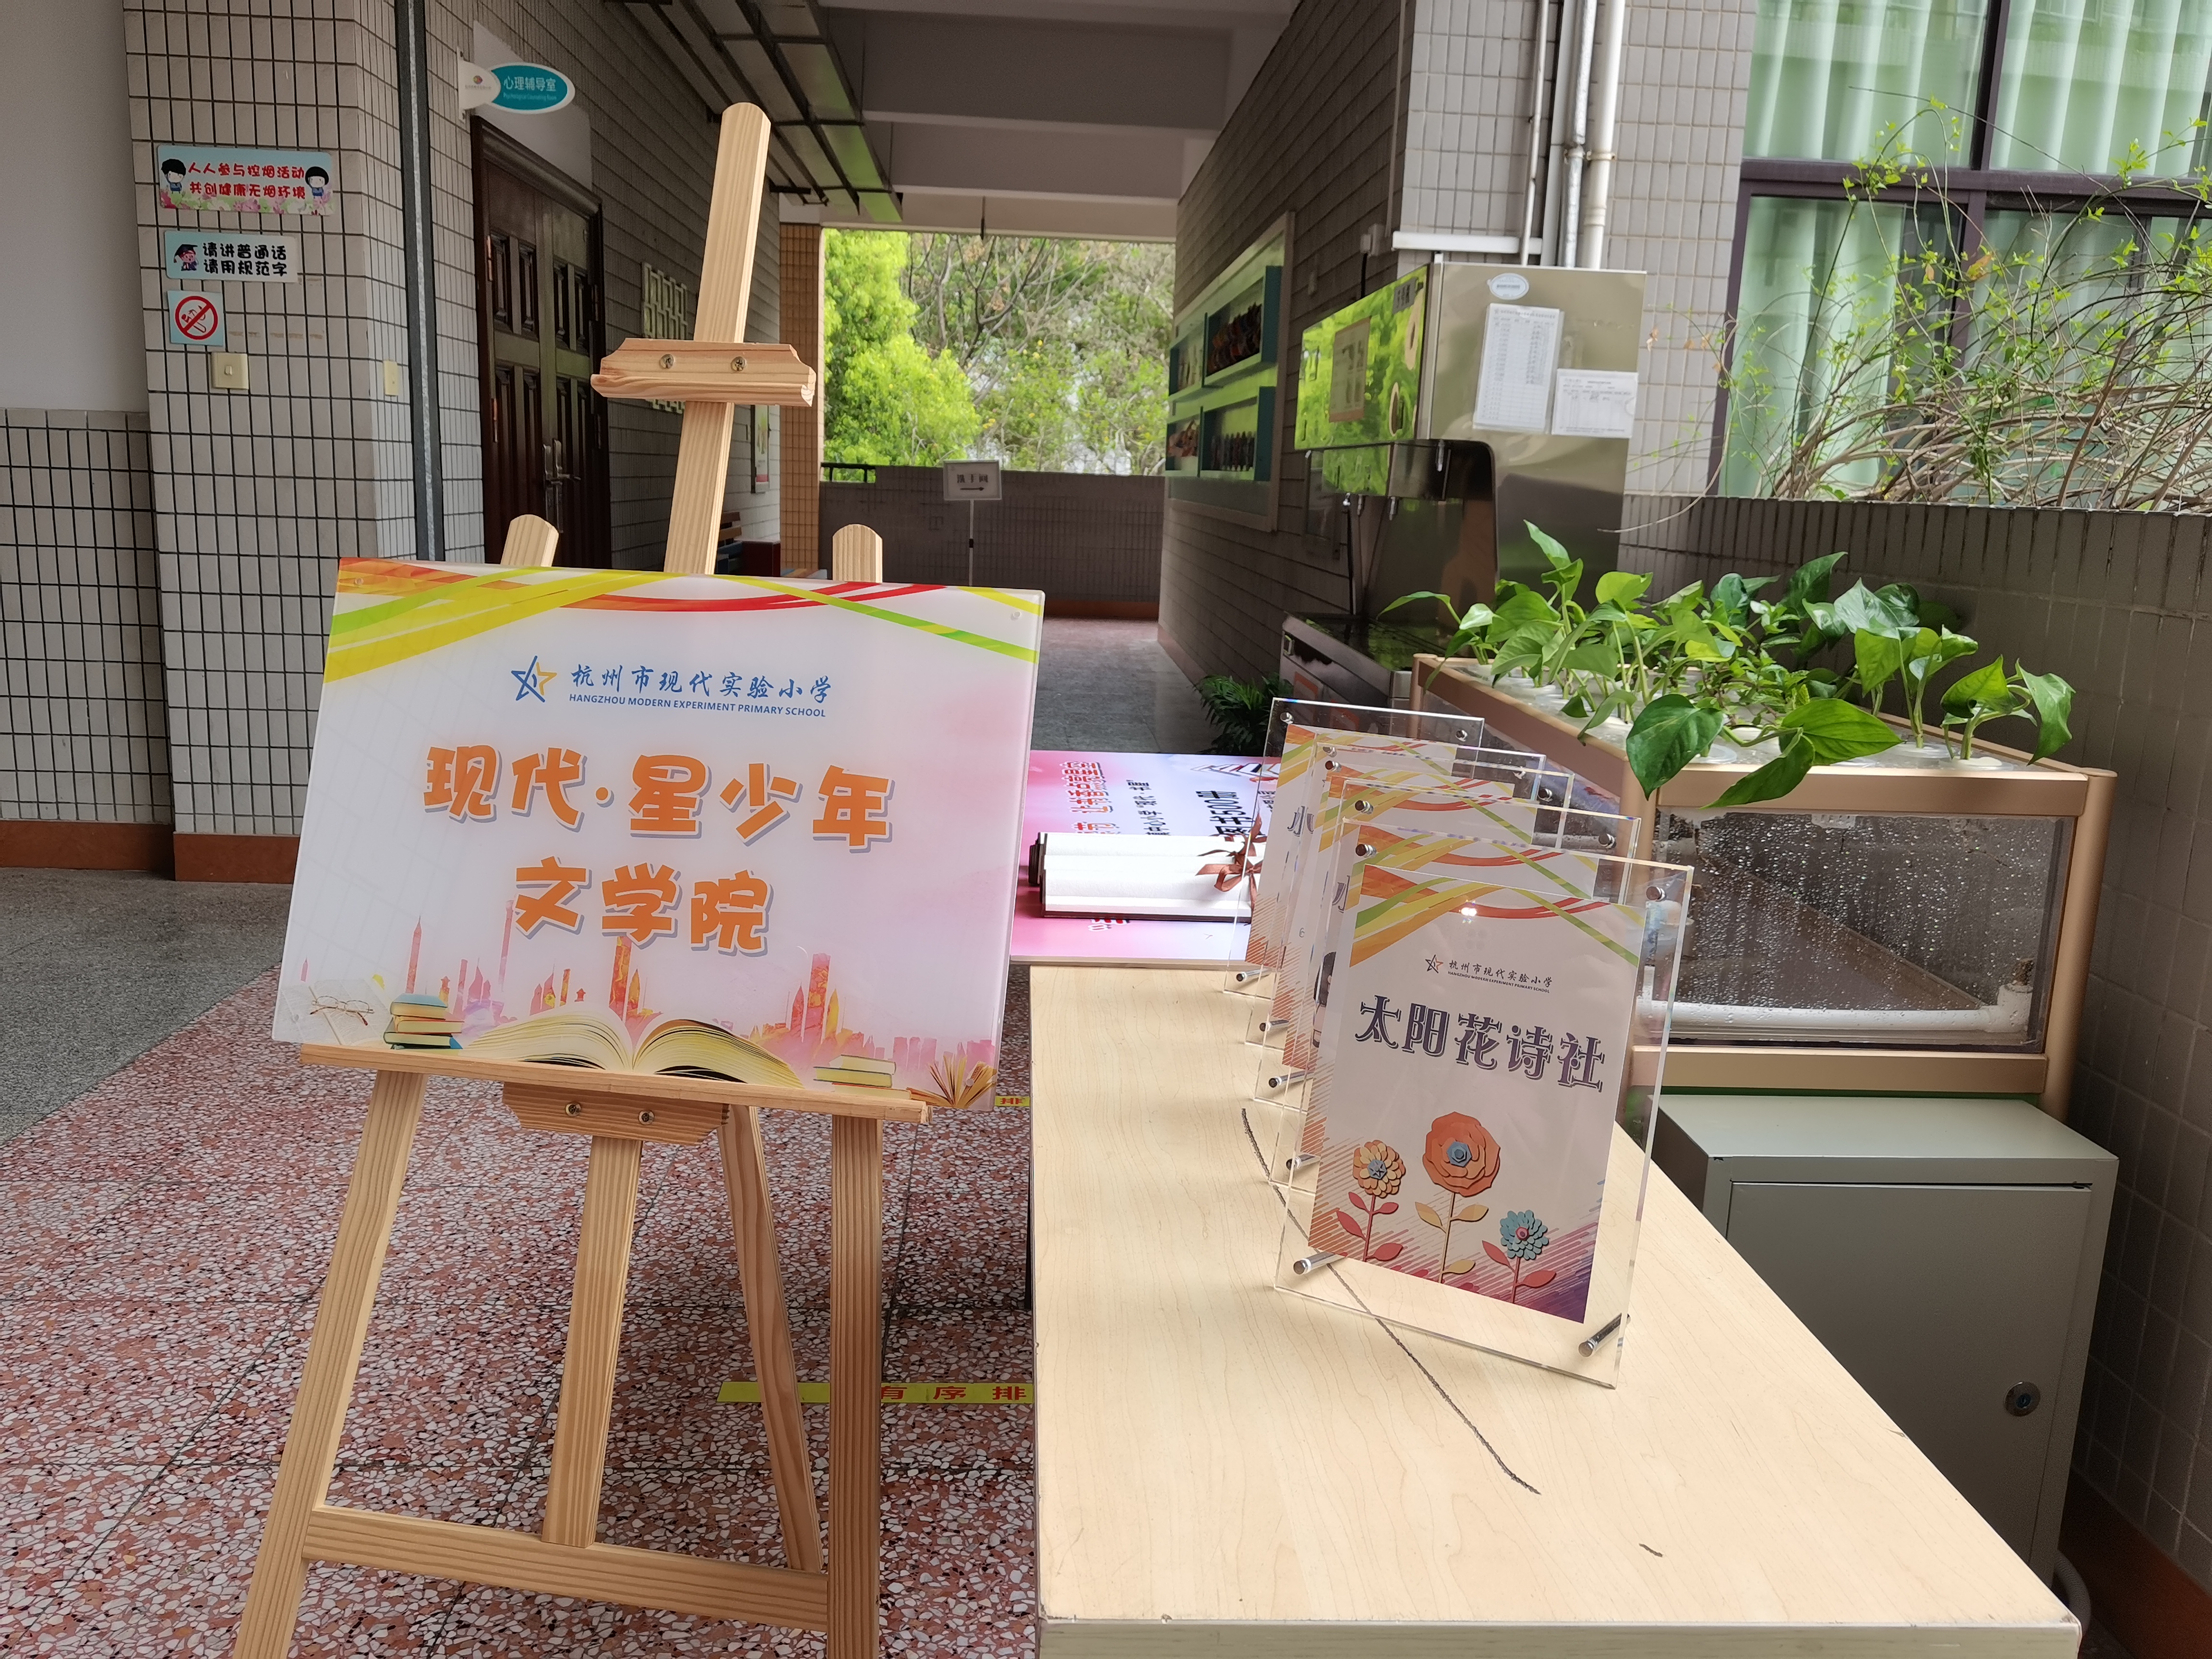 浸润书香，为人生奠基 杭州市现代实验小学举行悦读节暨文学院成立仪式